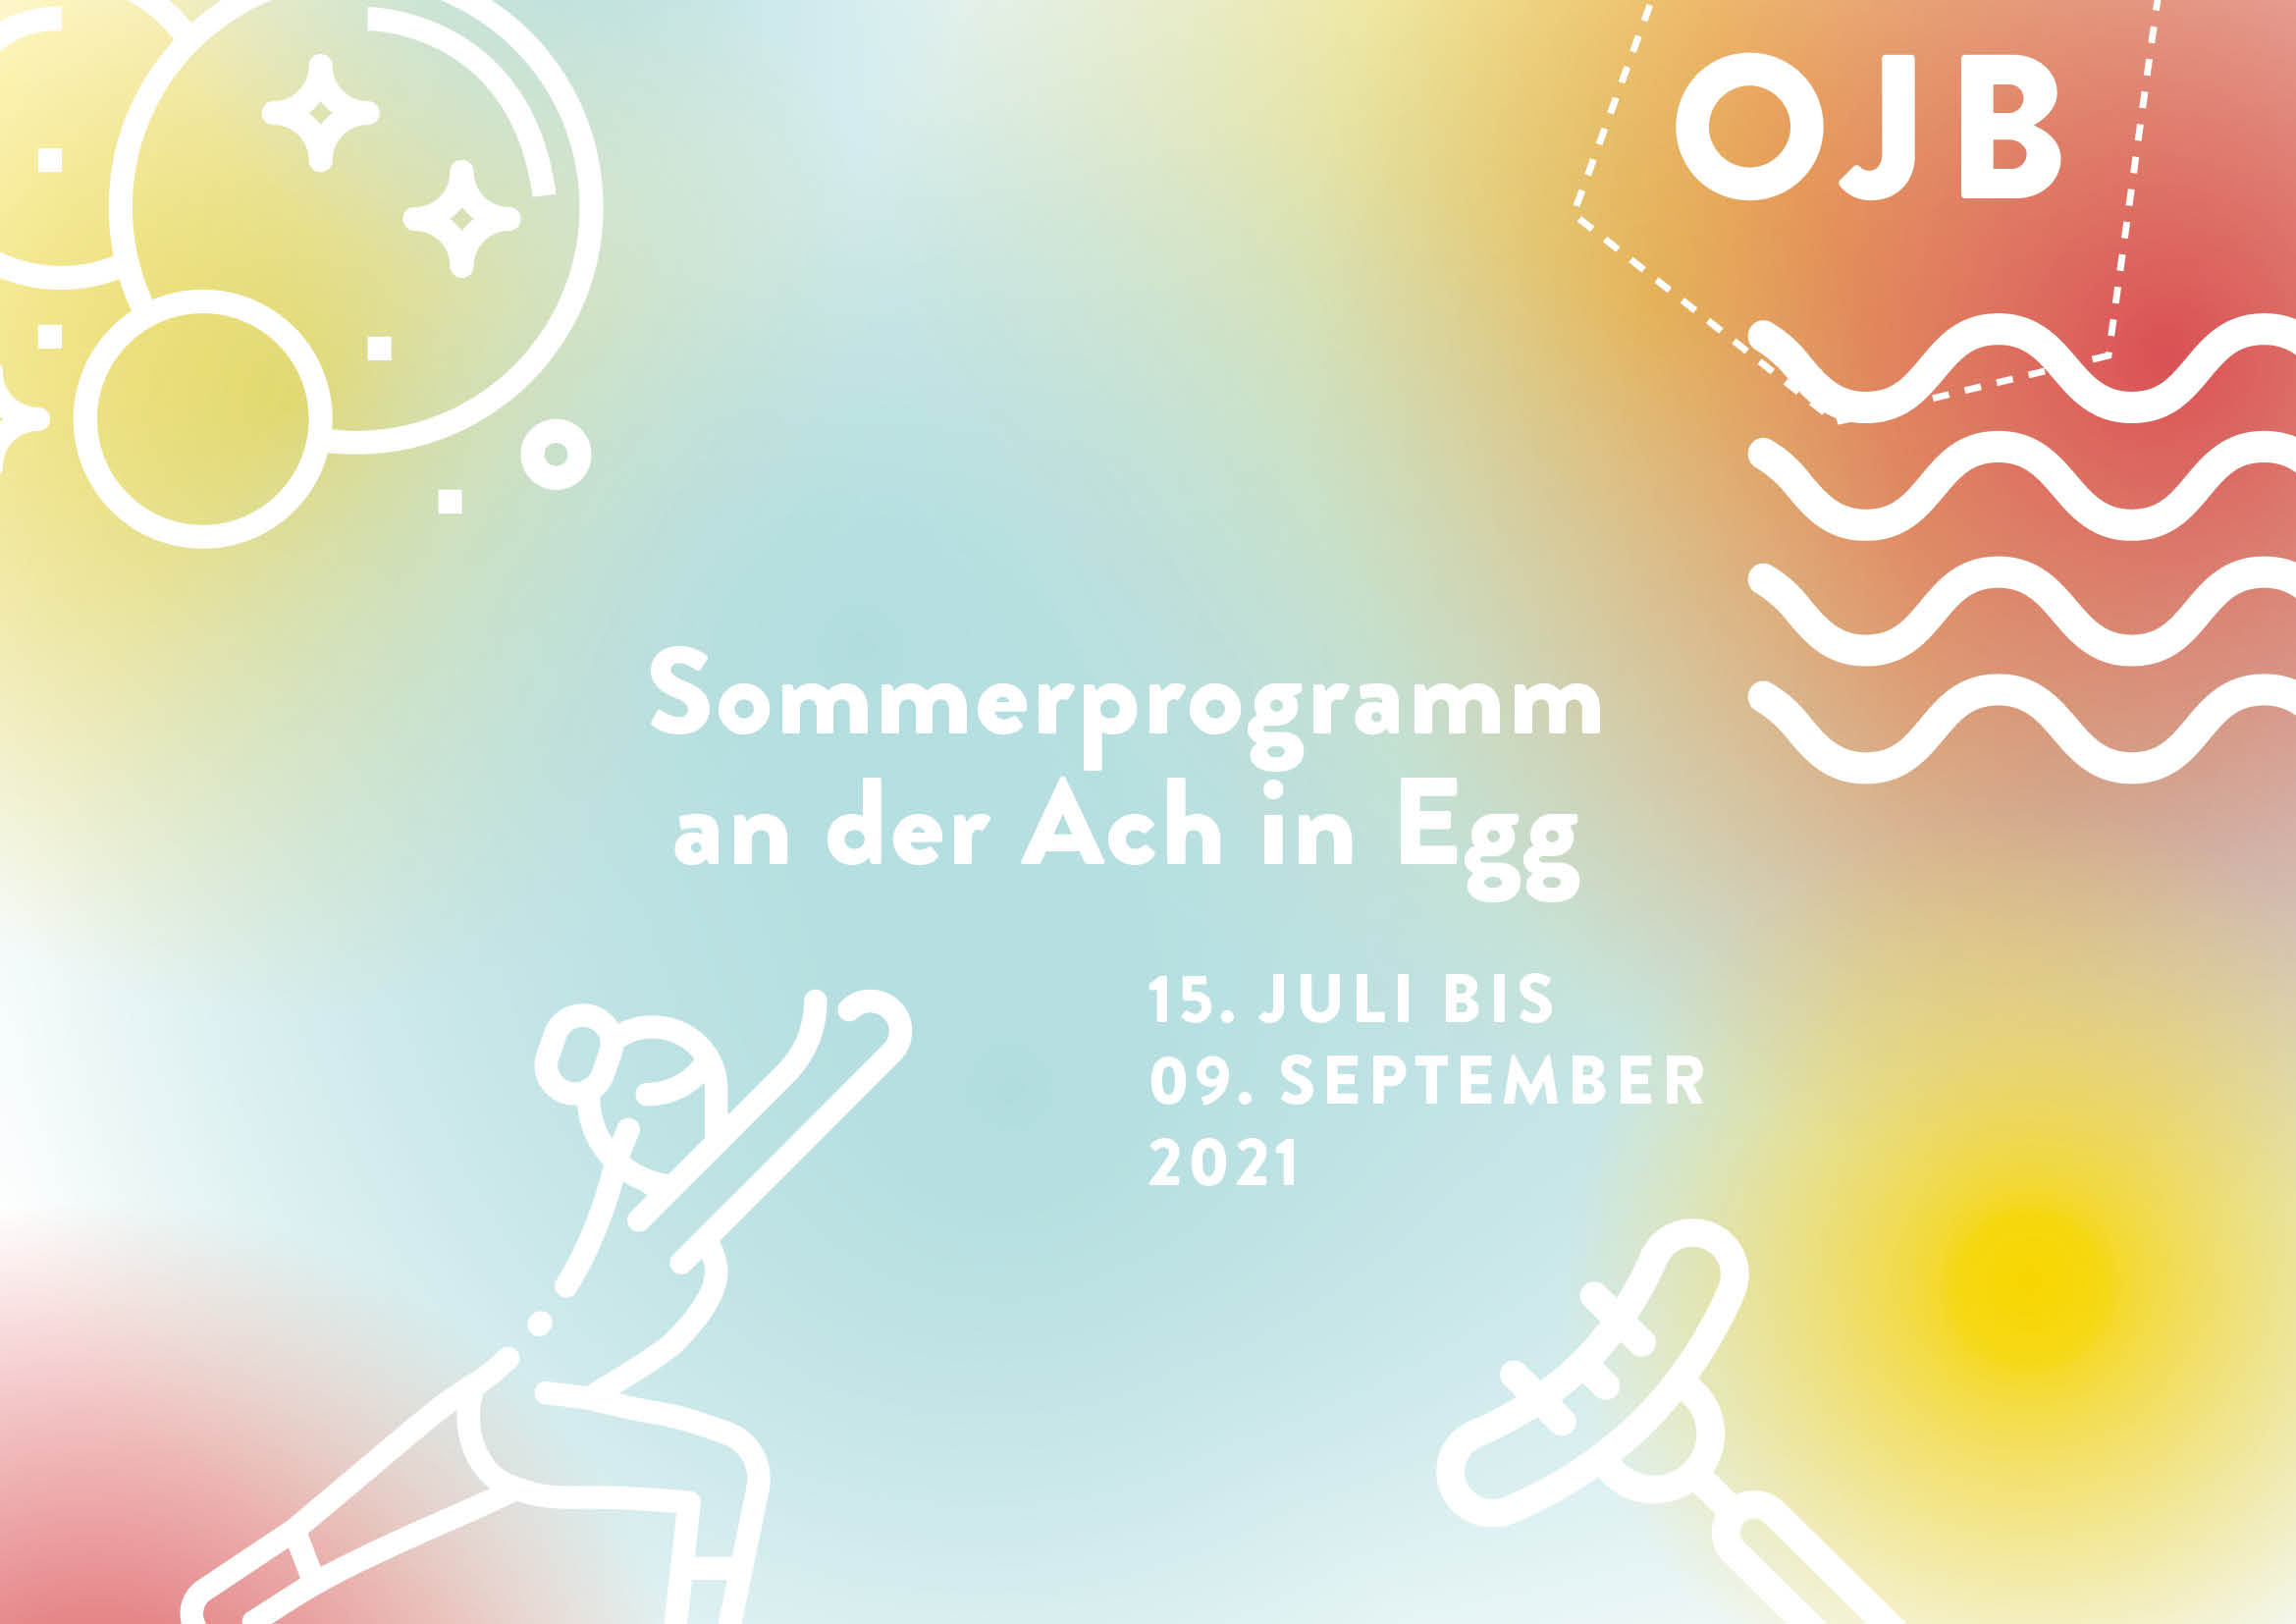 Sommerprogramm für Jugendliche an der Ach in Egg von der Offenen Jugendarbeit Bregenzerwald.